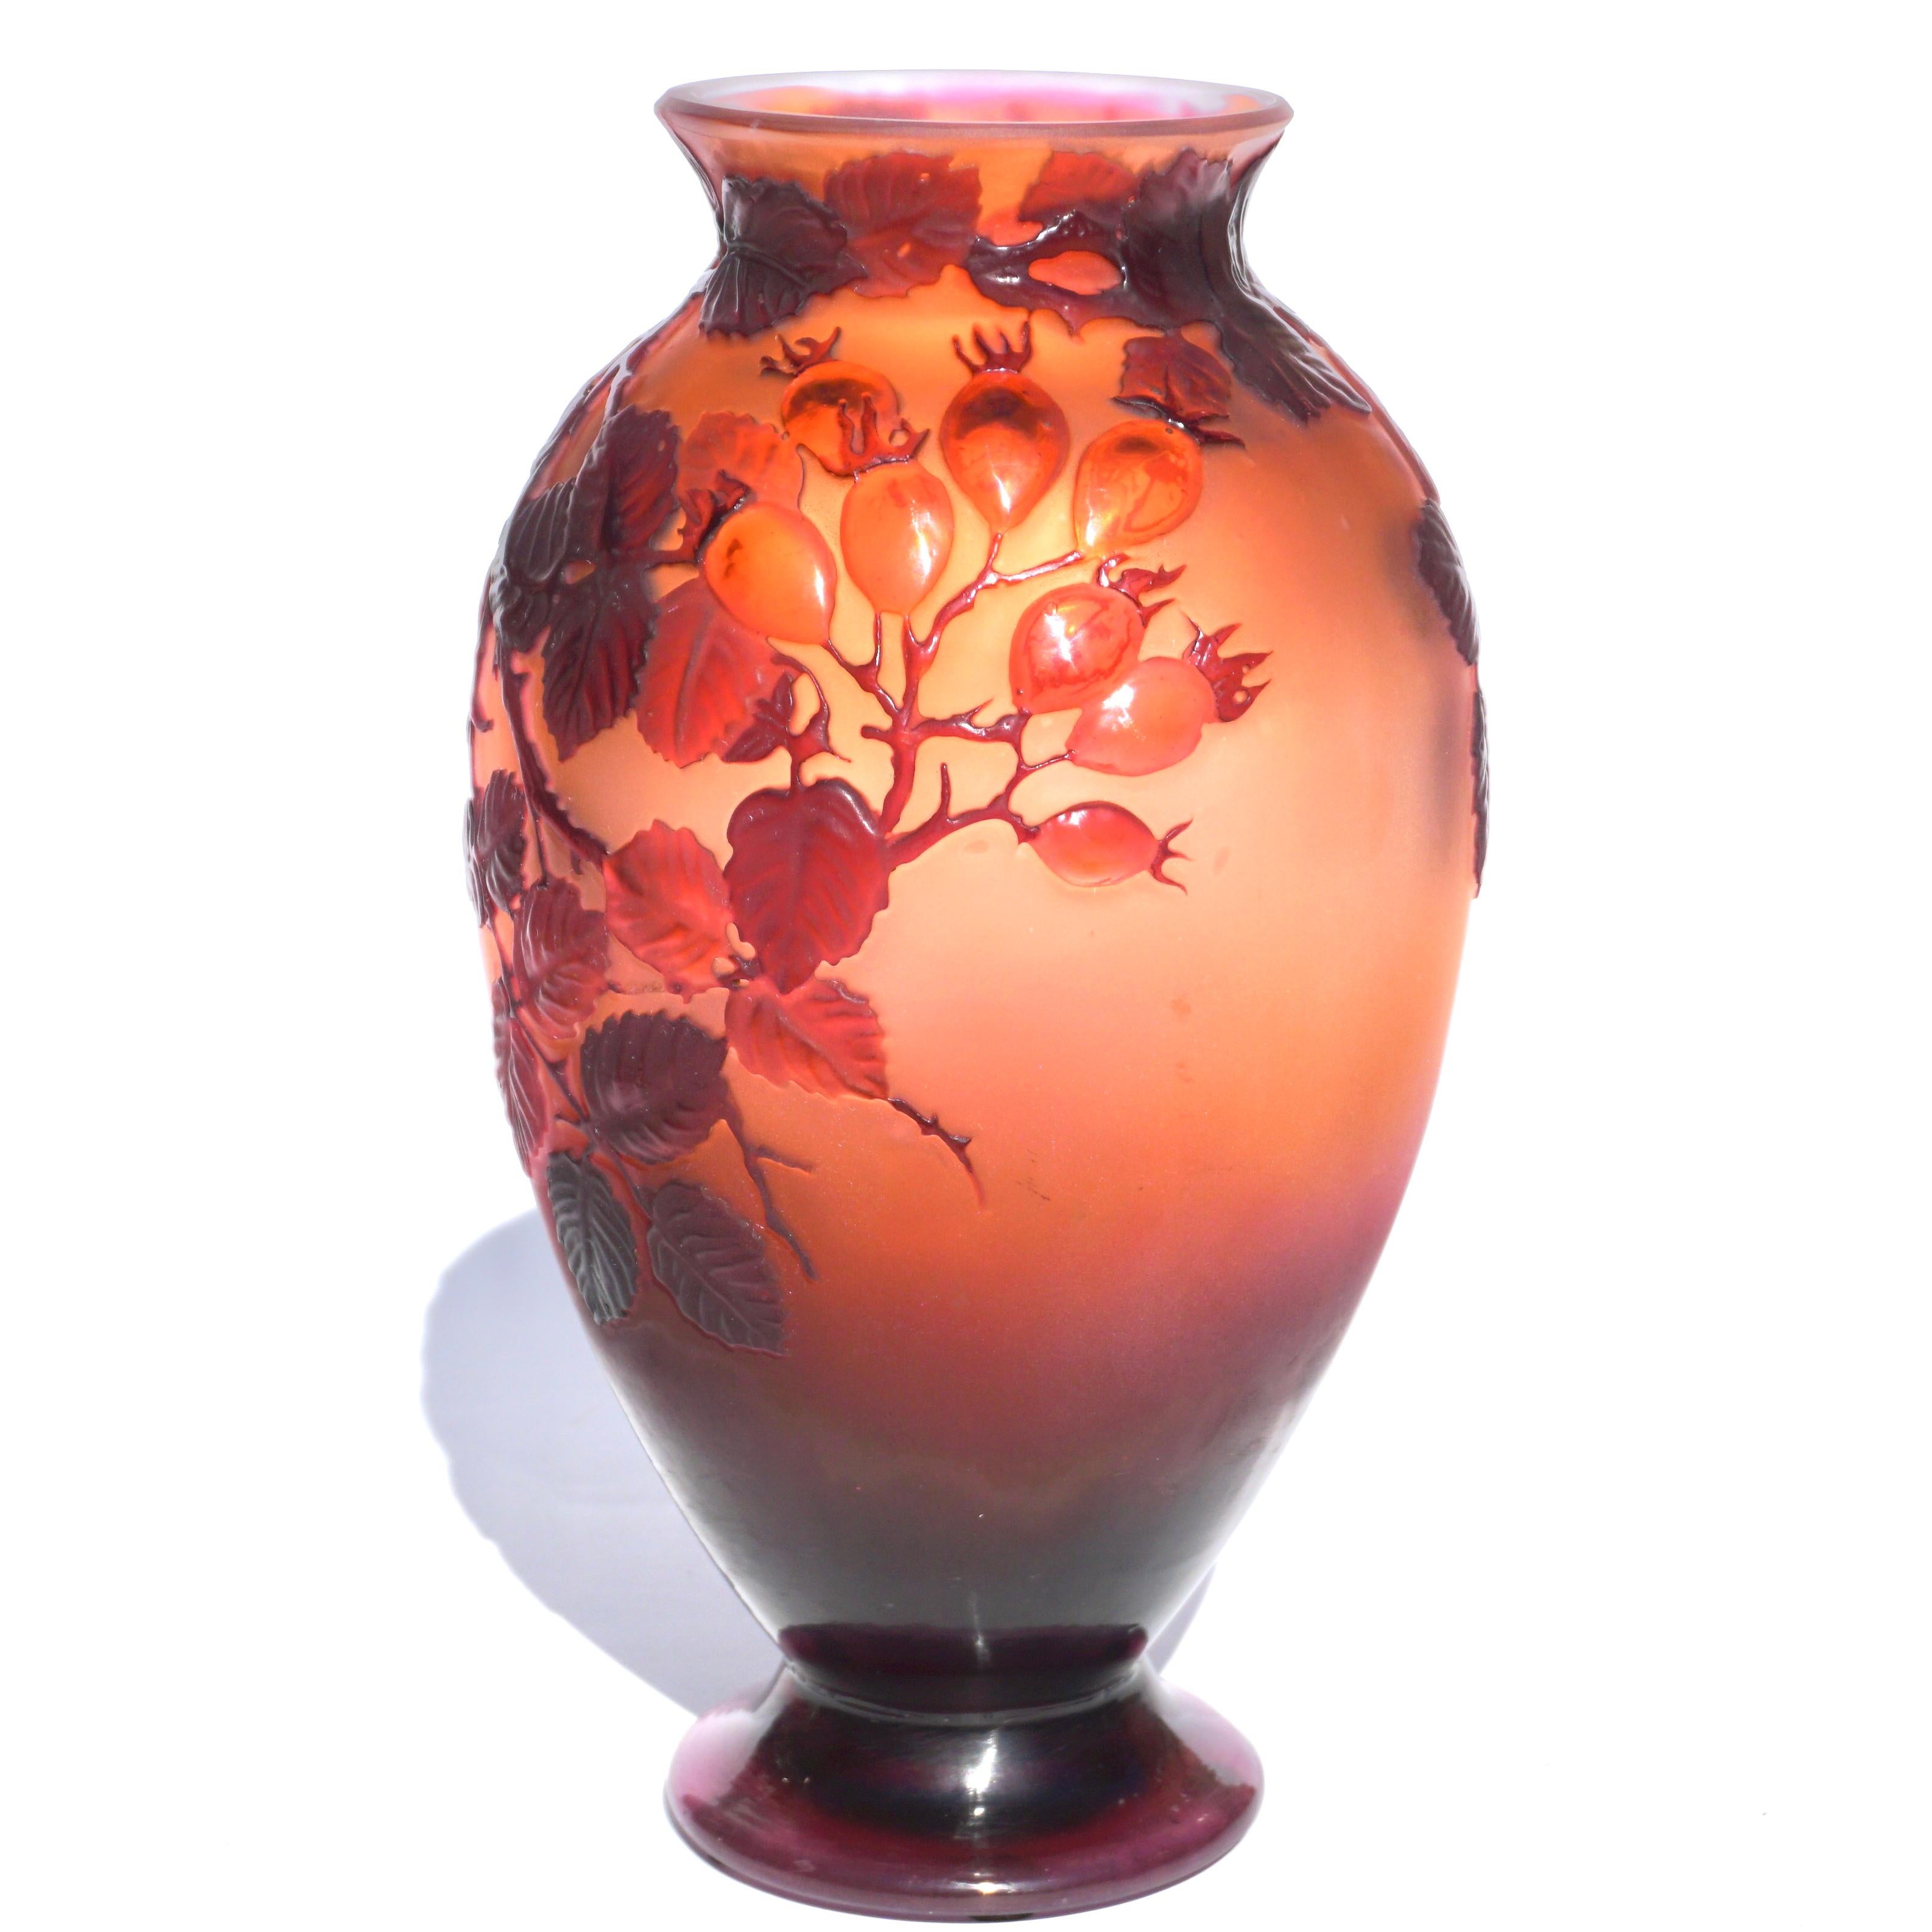 Art Glass Emile Galle Mold Blown Wild Rose Art Nouveau Vase